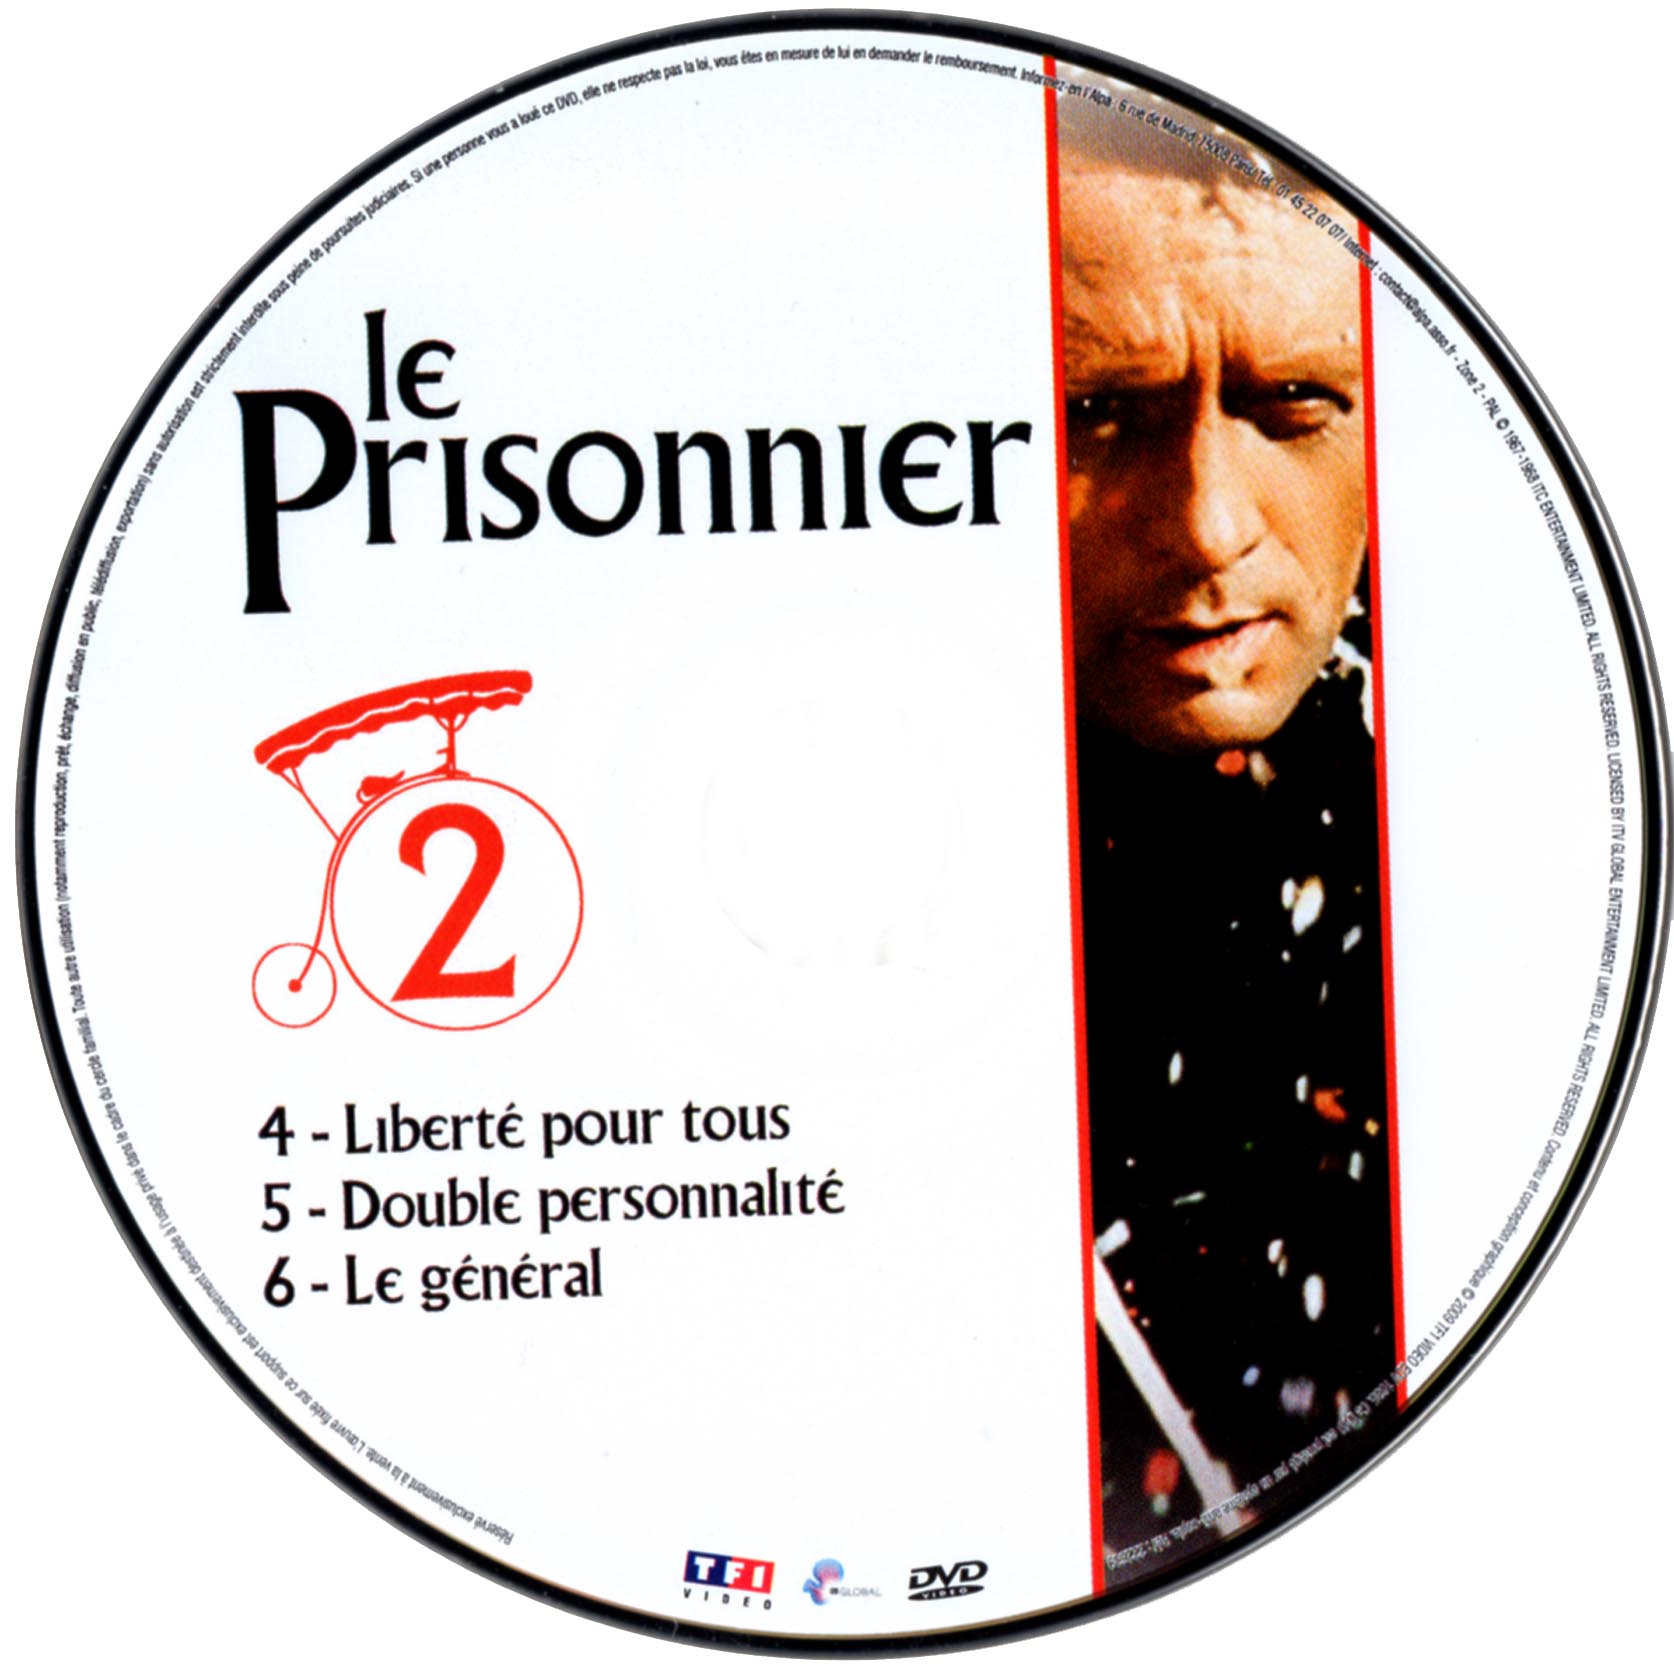 Le prisonnier DISC 2